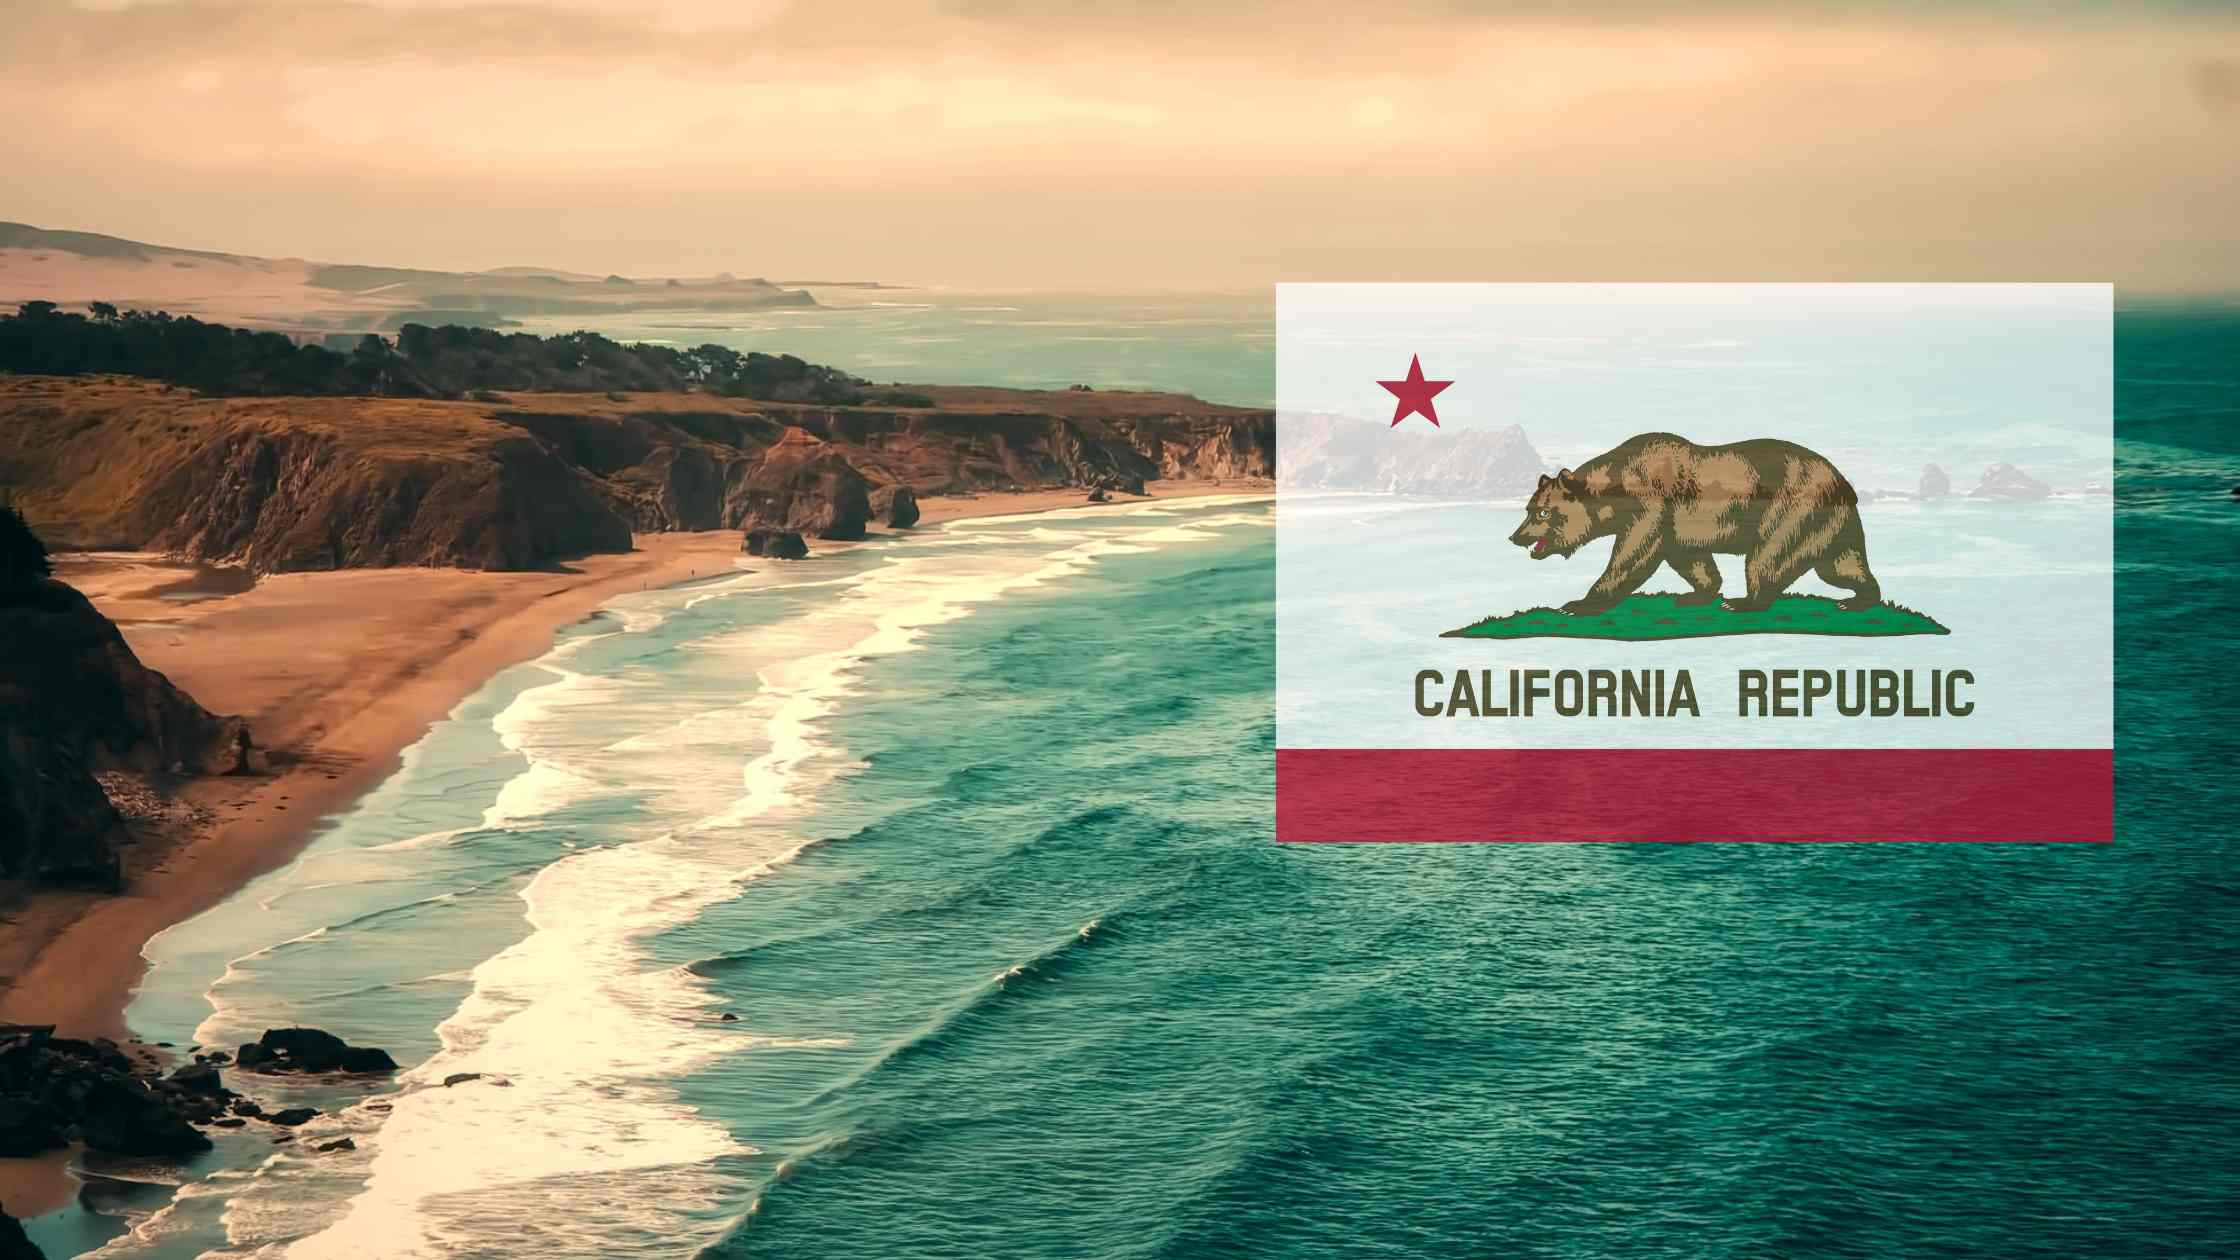 California coast and flag